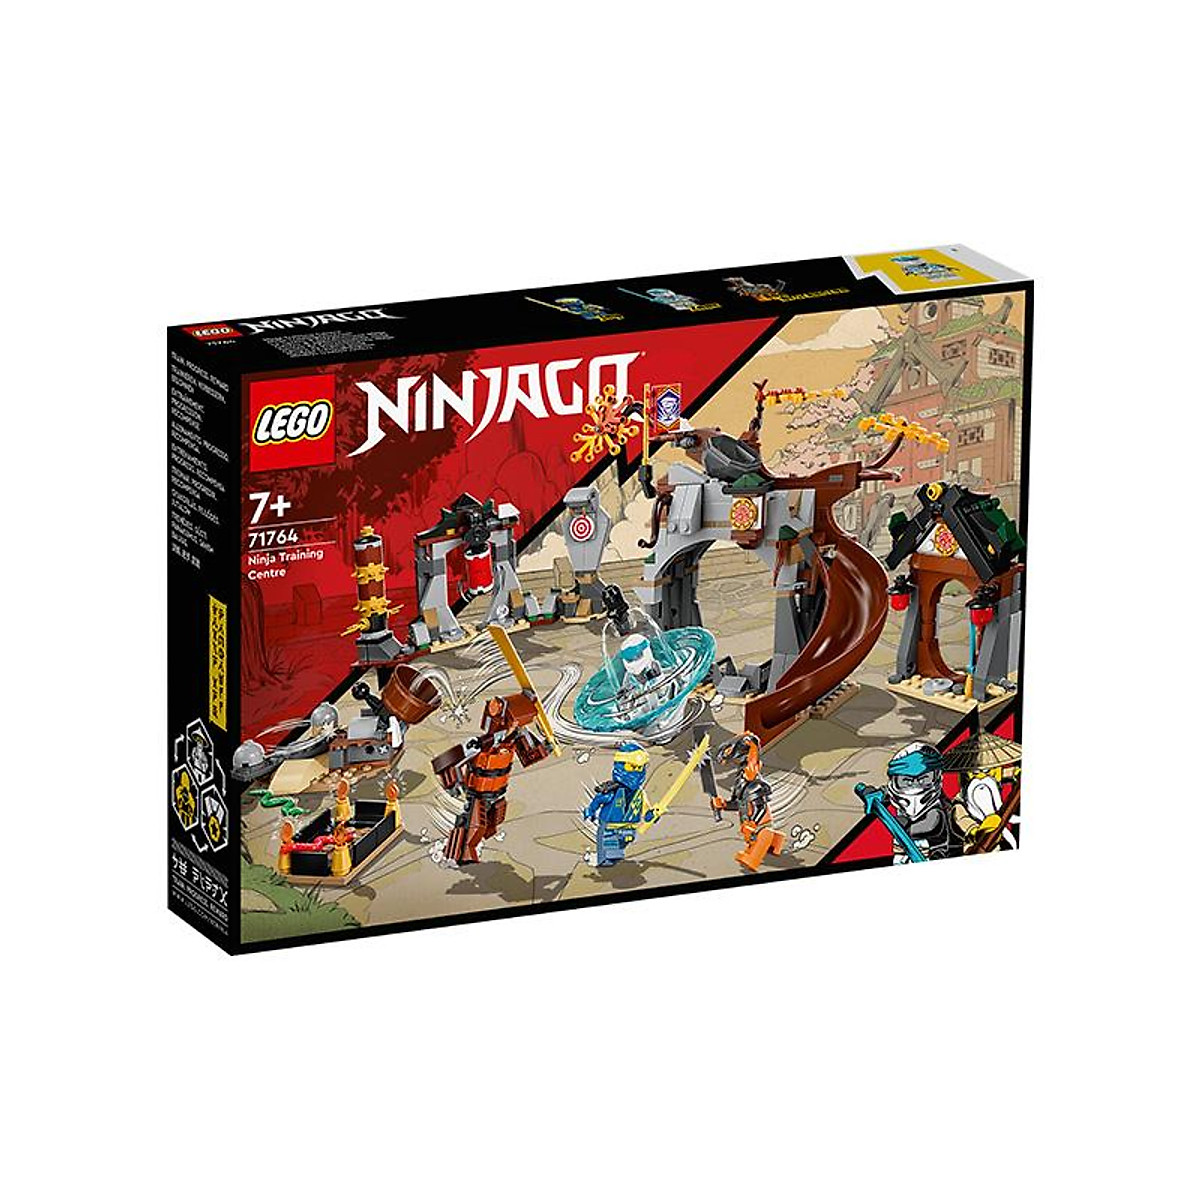 Đồ Chơi Lego Ninjago Trung Tâm Huấn Luyện Ninja 71764 (524 Chi Tiết)